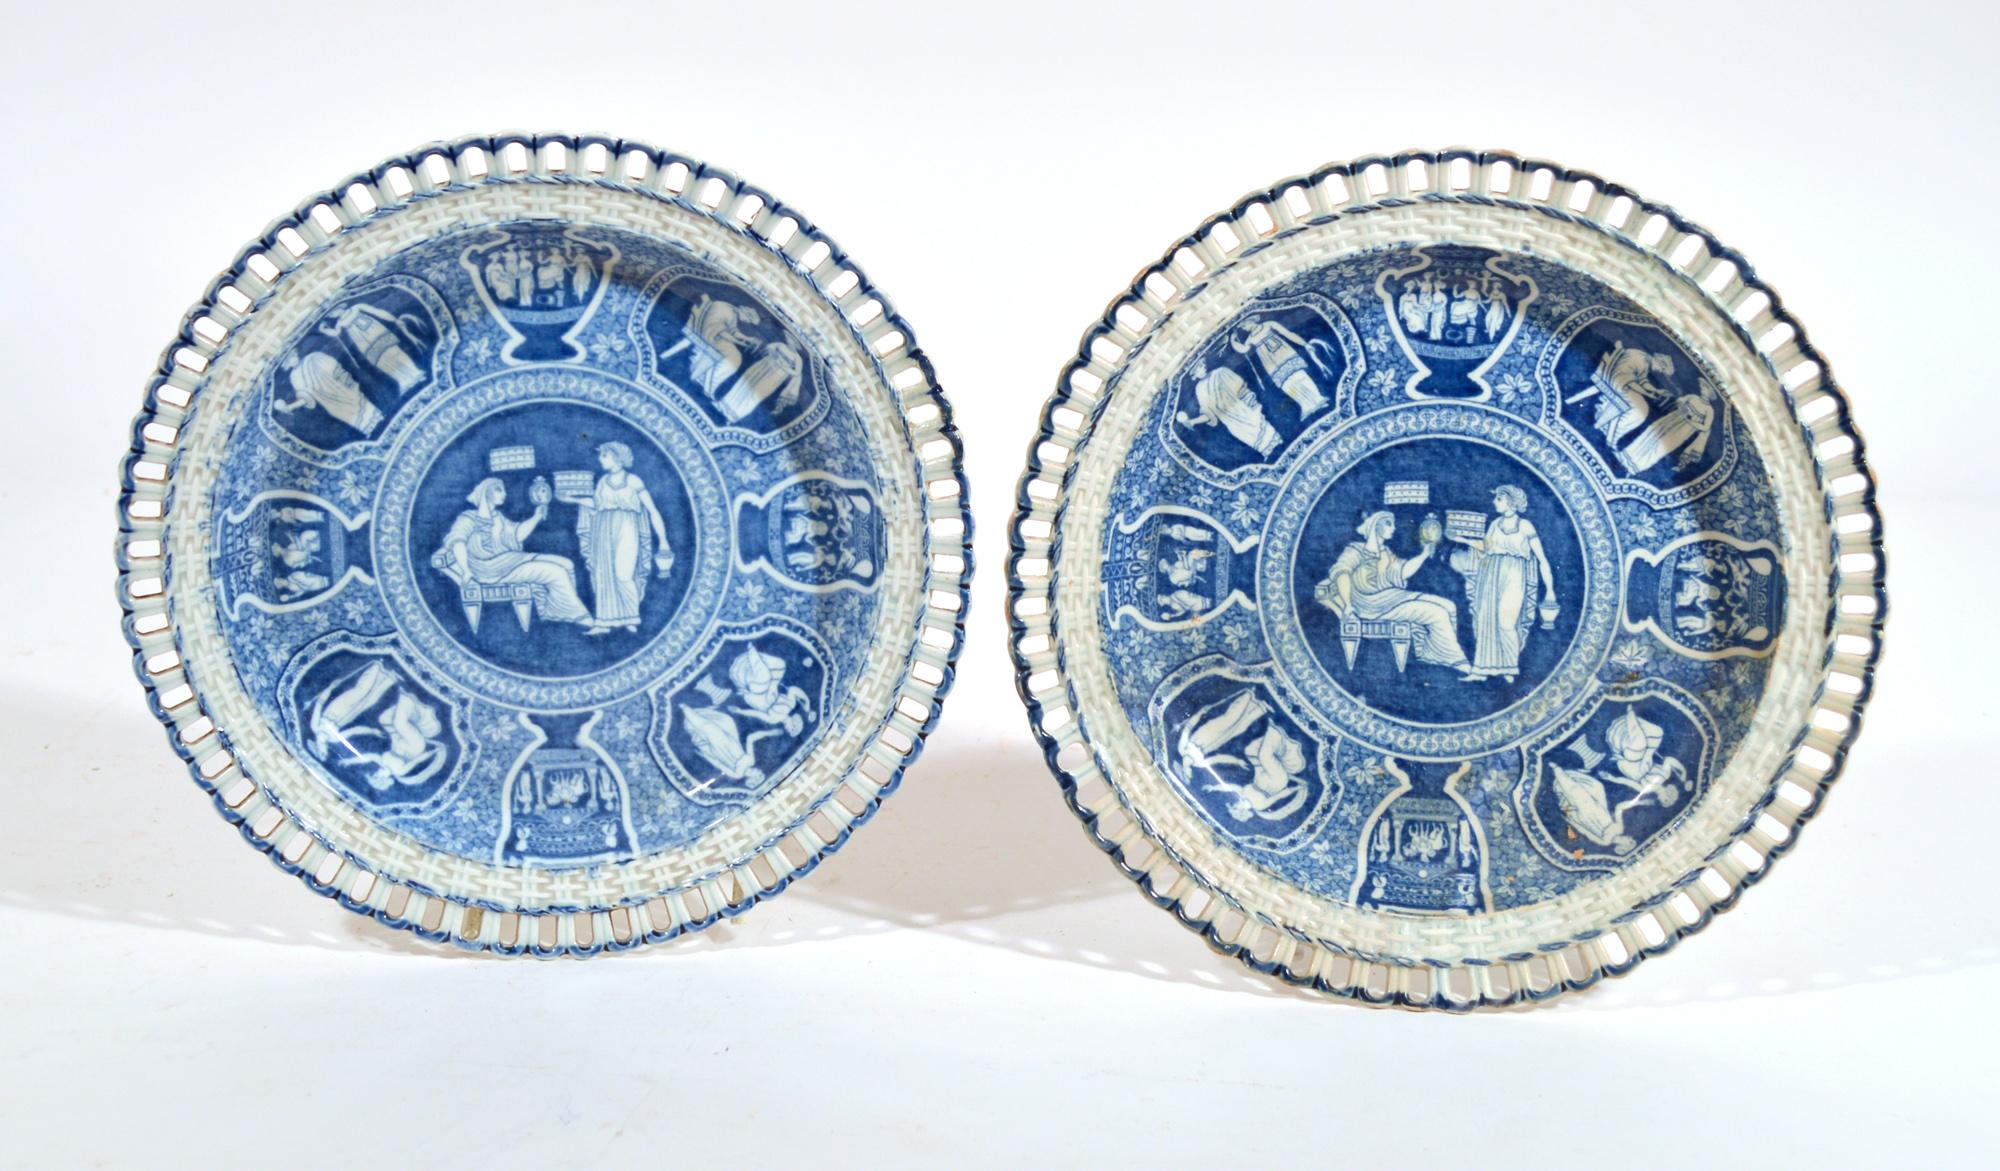 Spode neo-klassischen griechischen Muster blau durchbrochene Dessertteller,
Ceres mit einer Priesterin,
Vier Tafeln (4)
Anfang des 19. Jahrhunderts
Aus einer großen Sammlung von Spode mit griechischem Muster - weitere Stücke werden im Laufe der